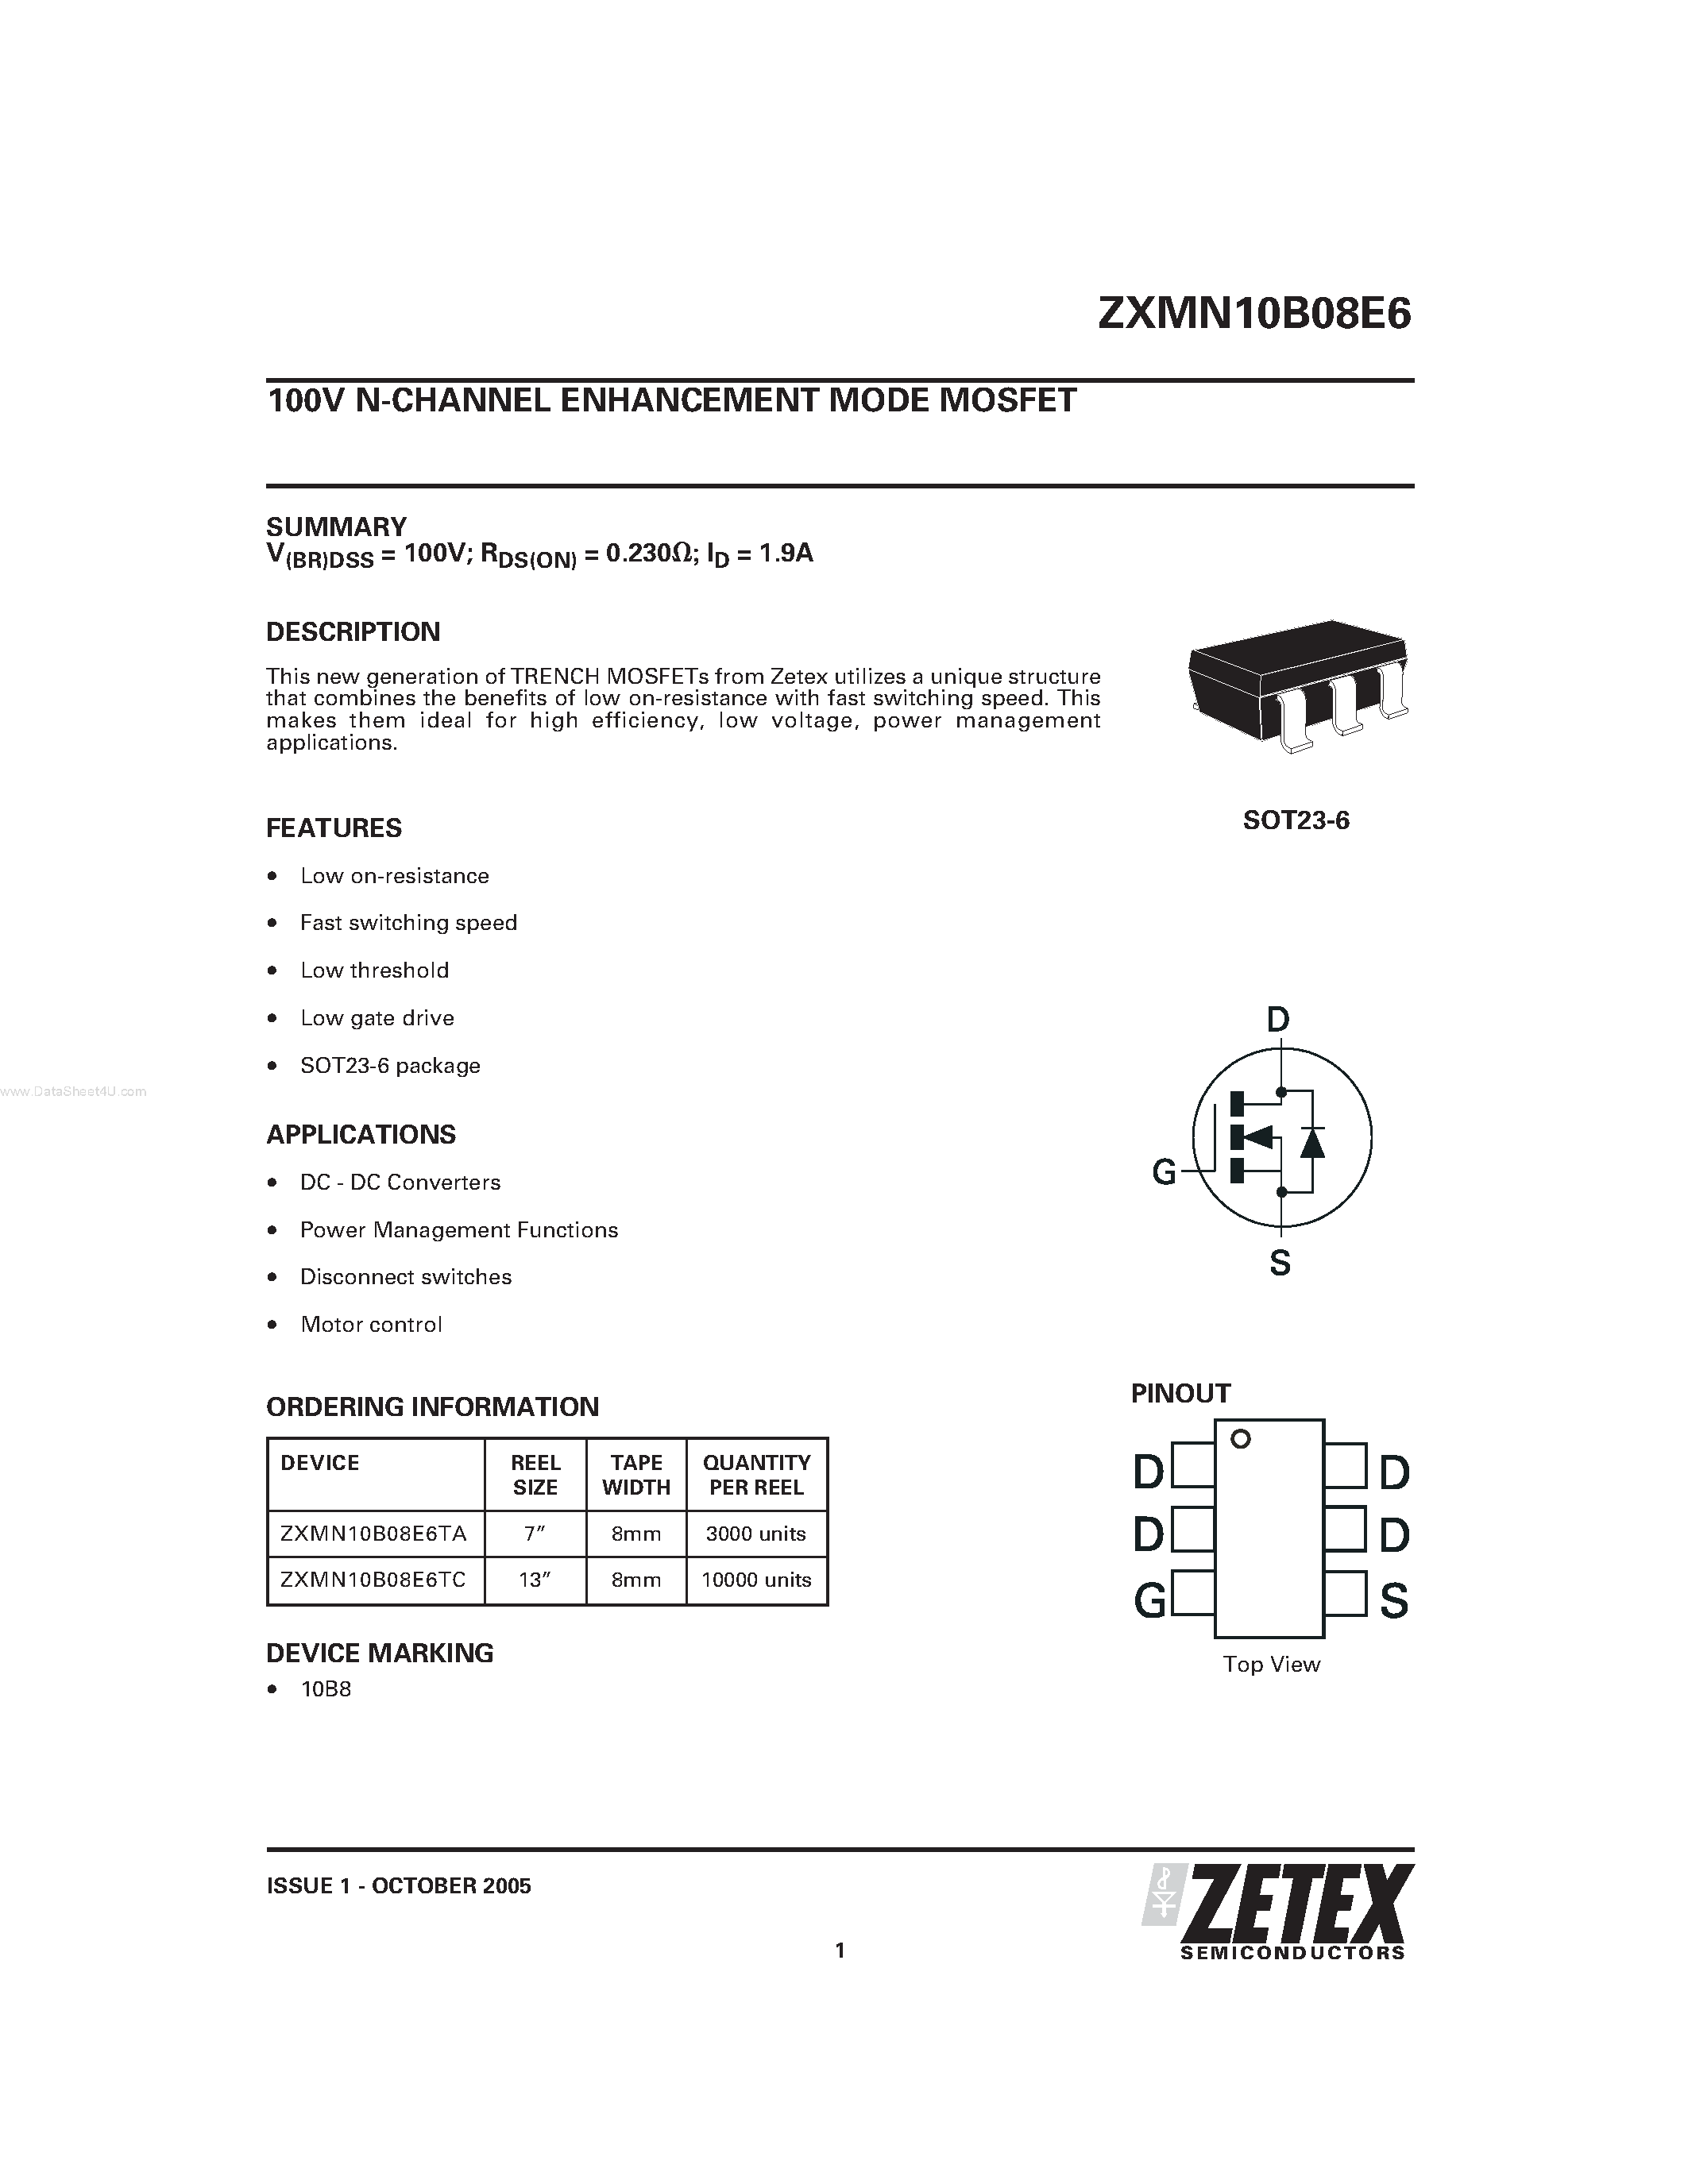 Datasheet ZXMN10B08E6 - N-CHANNEL ENHANCEMENT MODE MOSFET page 1